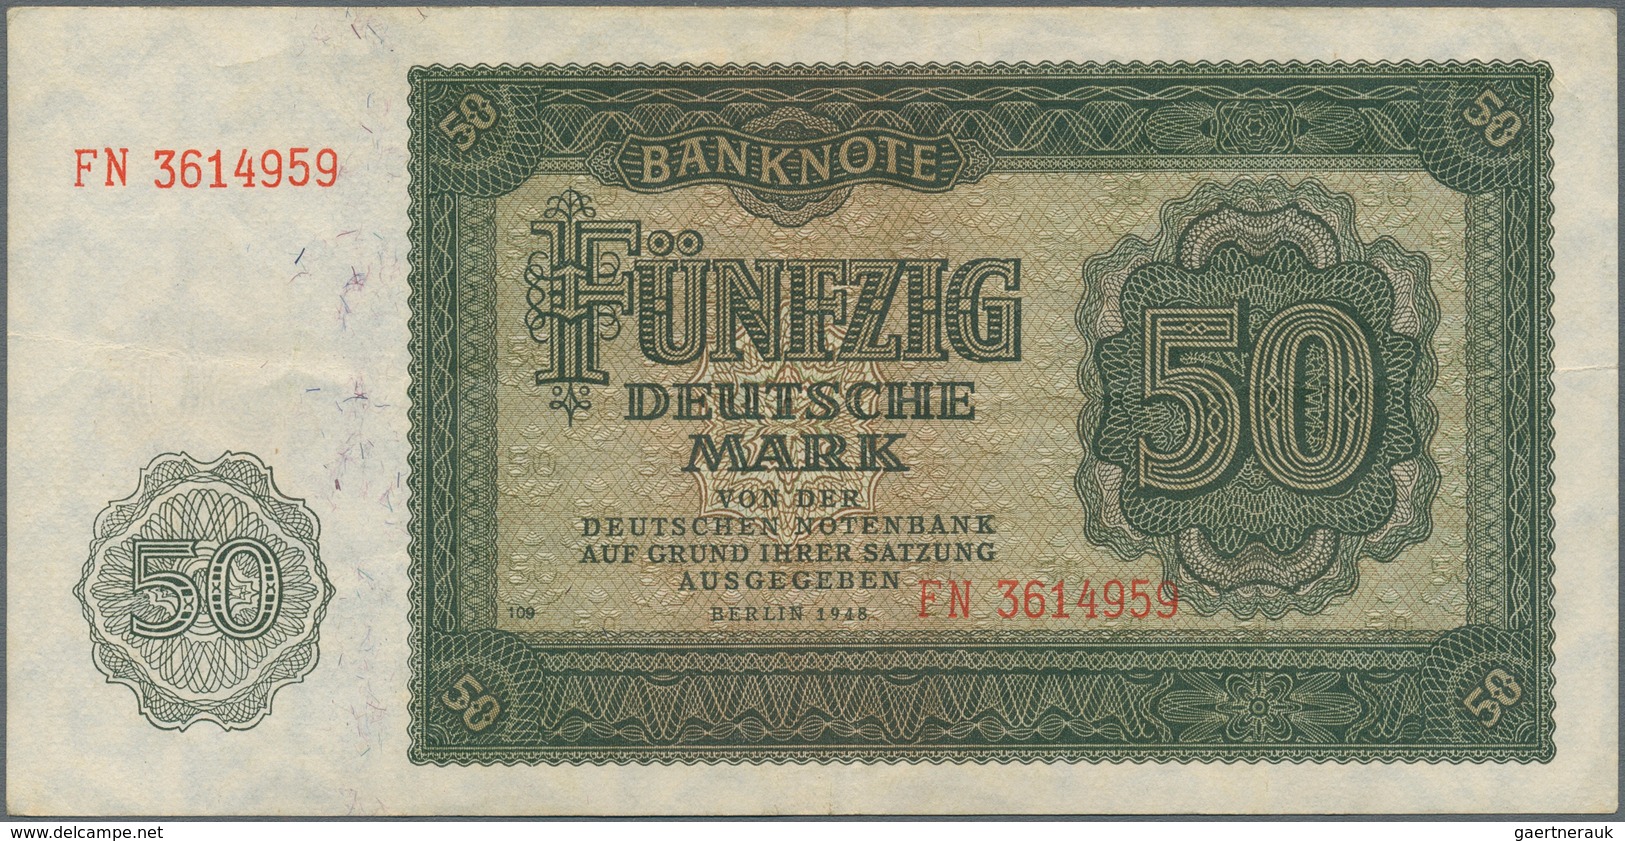 Deutschland - DDR: Album mit 181 Banknoten und diversen Gutscheinen DDR, diversen Banknoten Deutsche